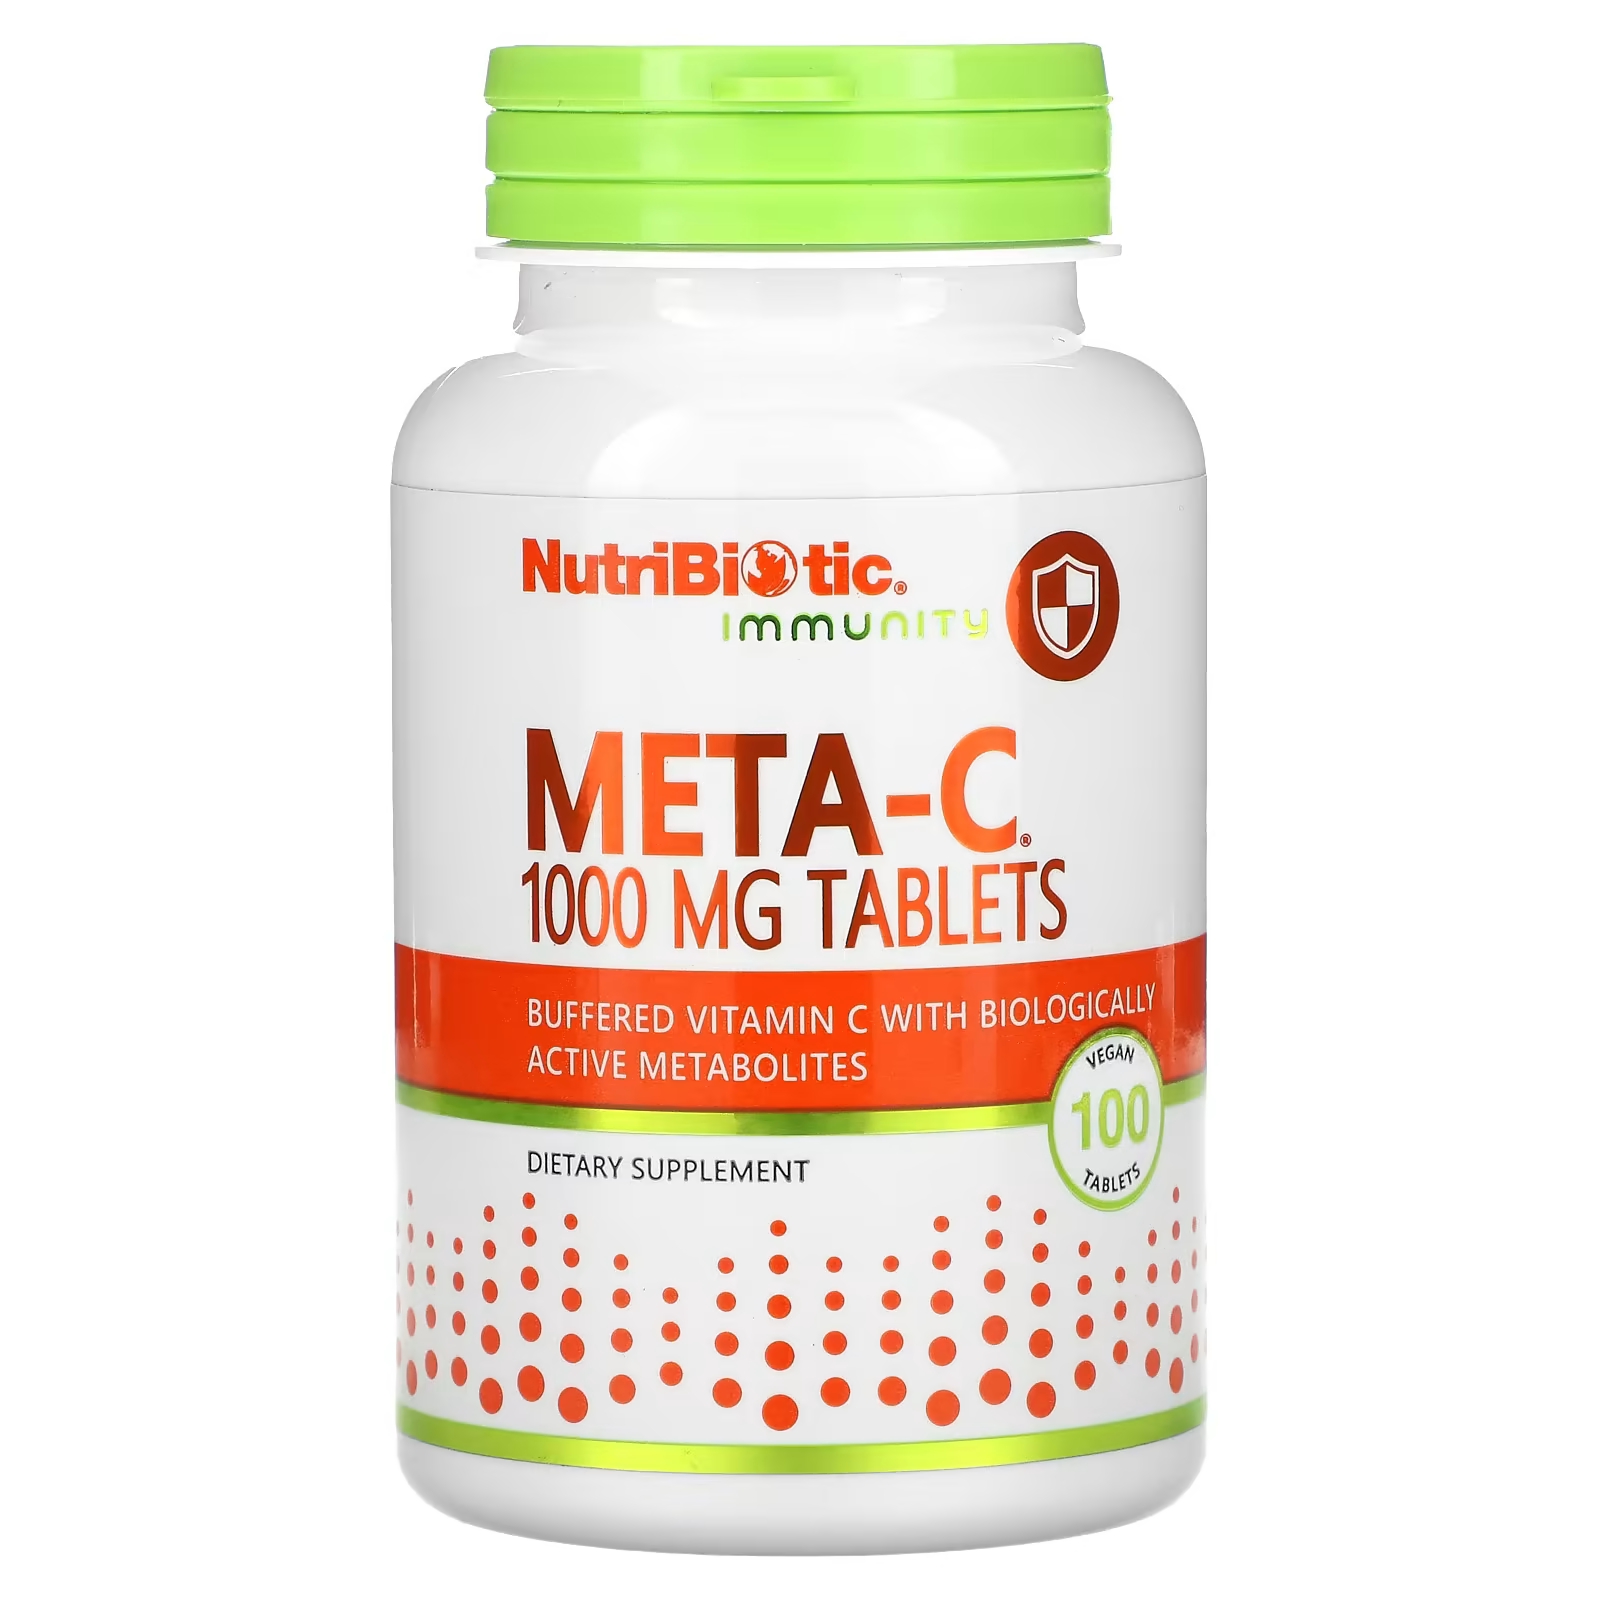 Пищевая добавка NutriBiotic Immunity Meta-C 1000 мг, 100 веганских таблеток nutribiotic immunity витамин c 1000 мг 500 веганских таблеток